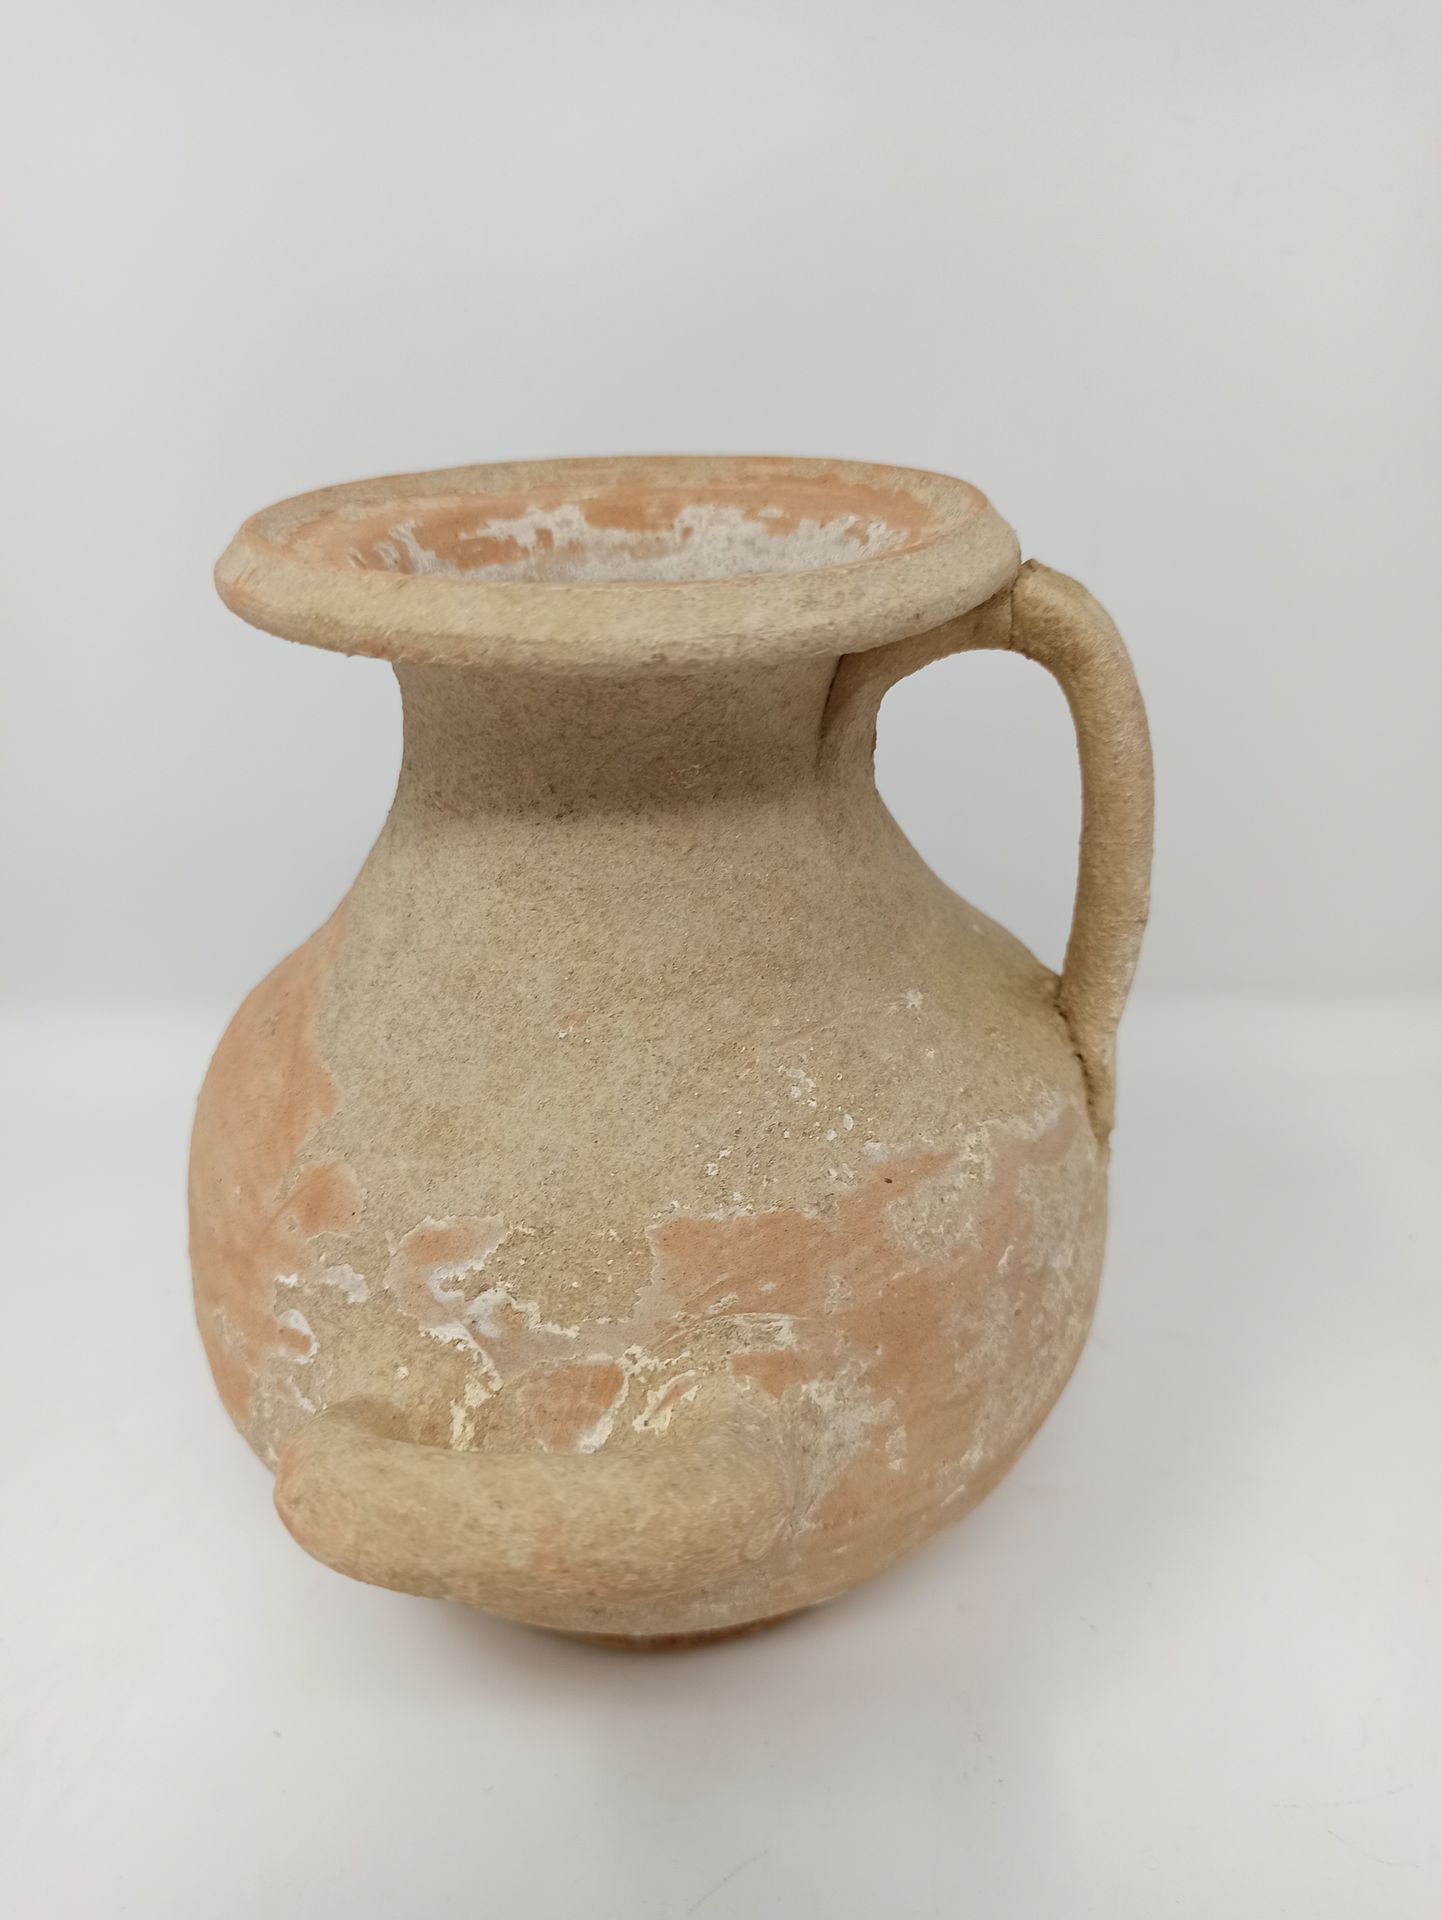 Null 拍品包括腓尼基油灯与杯，以及斜柄的水壶

米色赤土。泥土质地的存款，一个手柄被粘在后面，用于水手。

迦太基 ?

公元前4-3世纪

H.17厘米